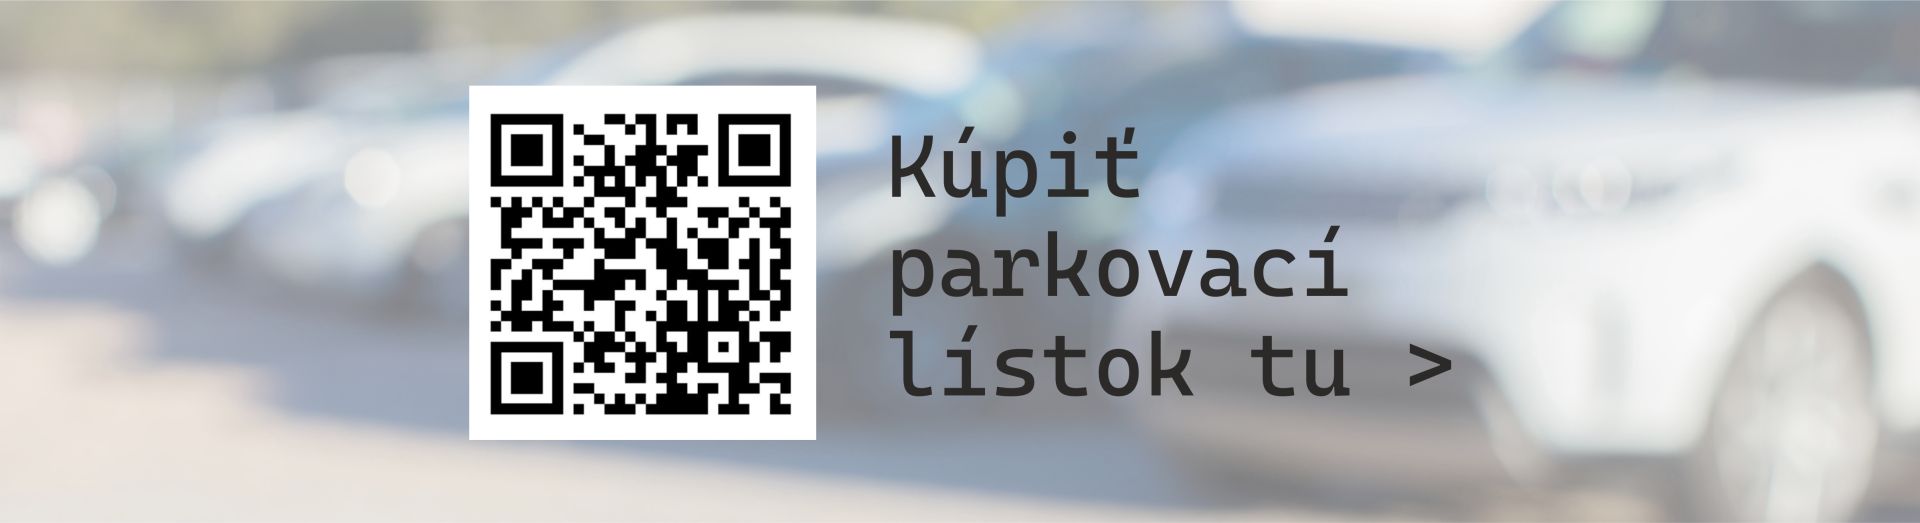 https://datamesta.martin.sk/#/parkovanie